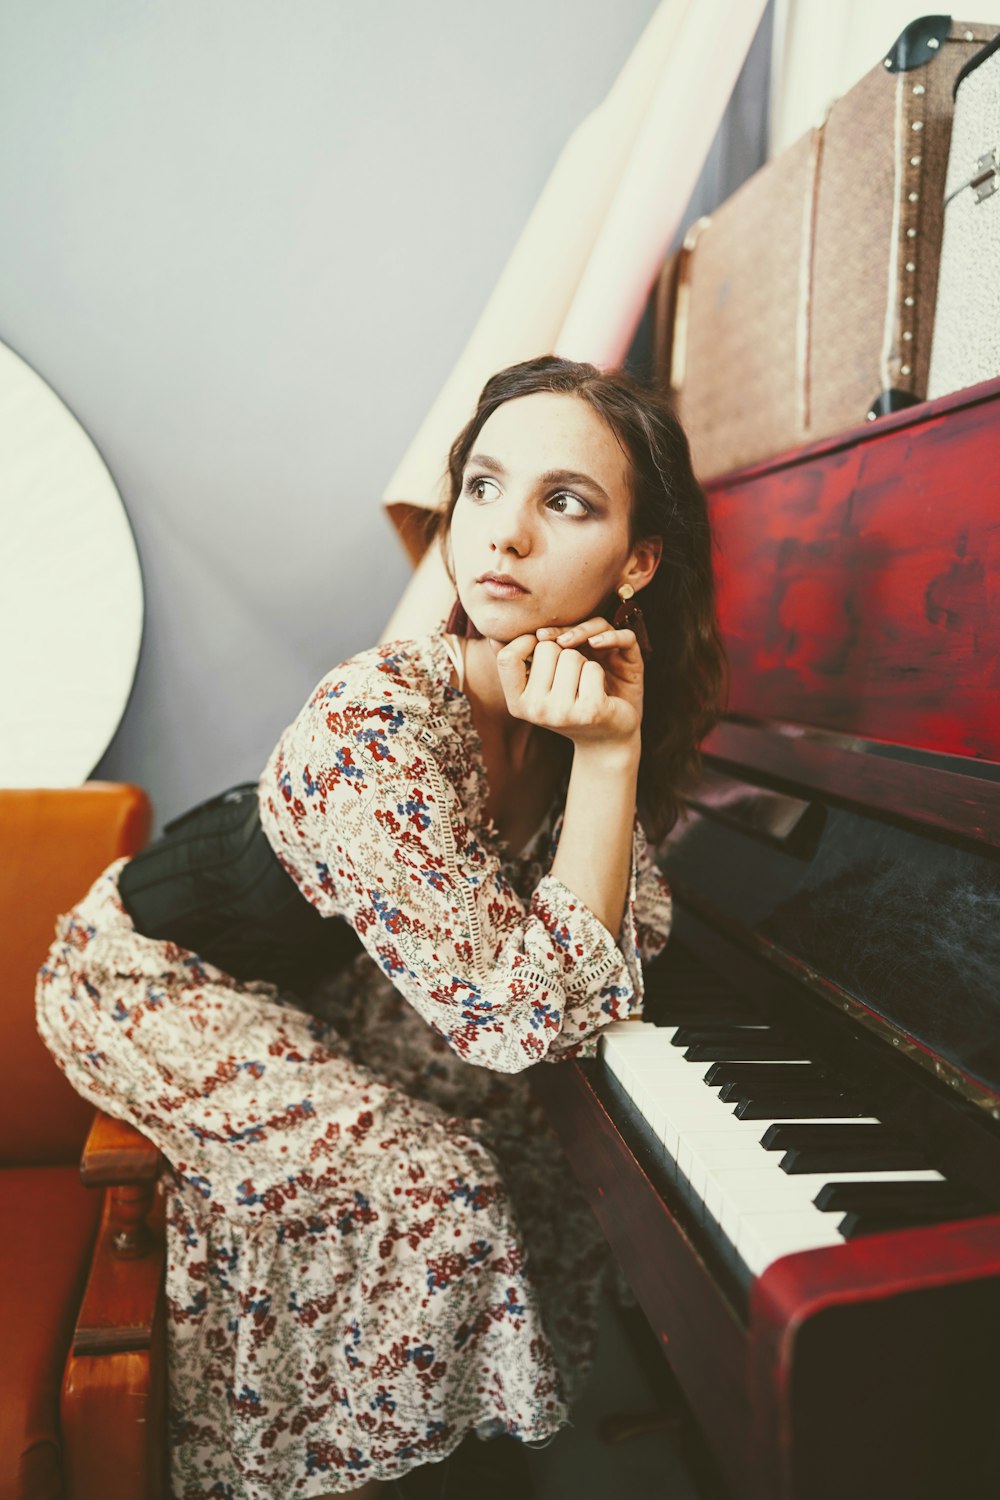 Mujer apoyada en piano rojo y gris